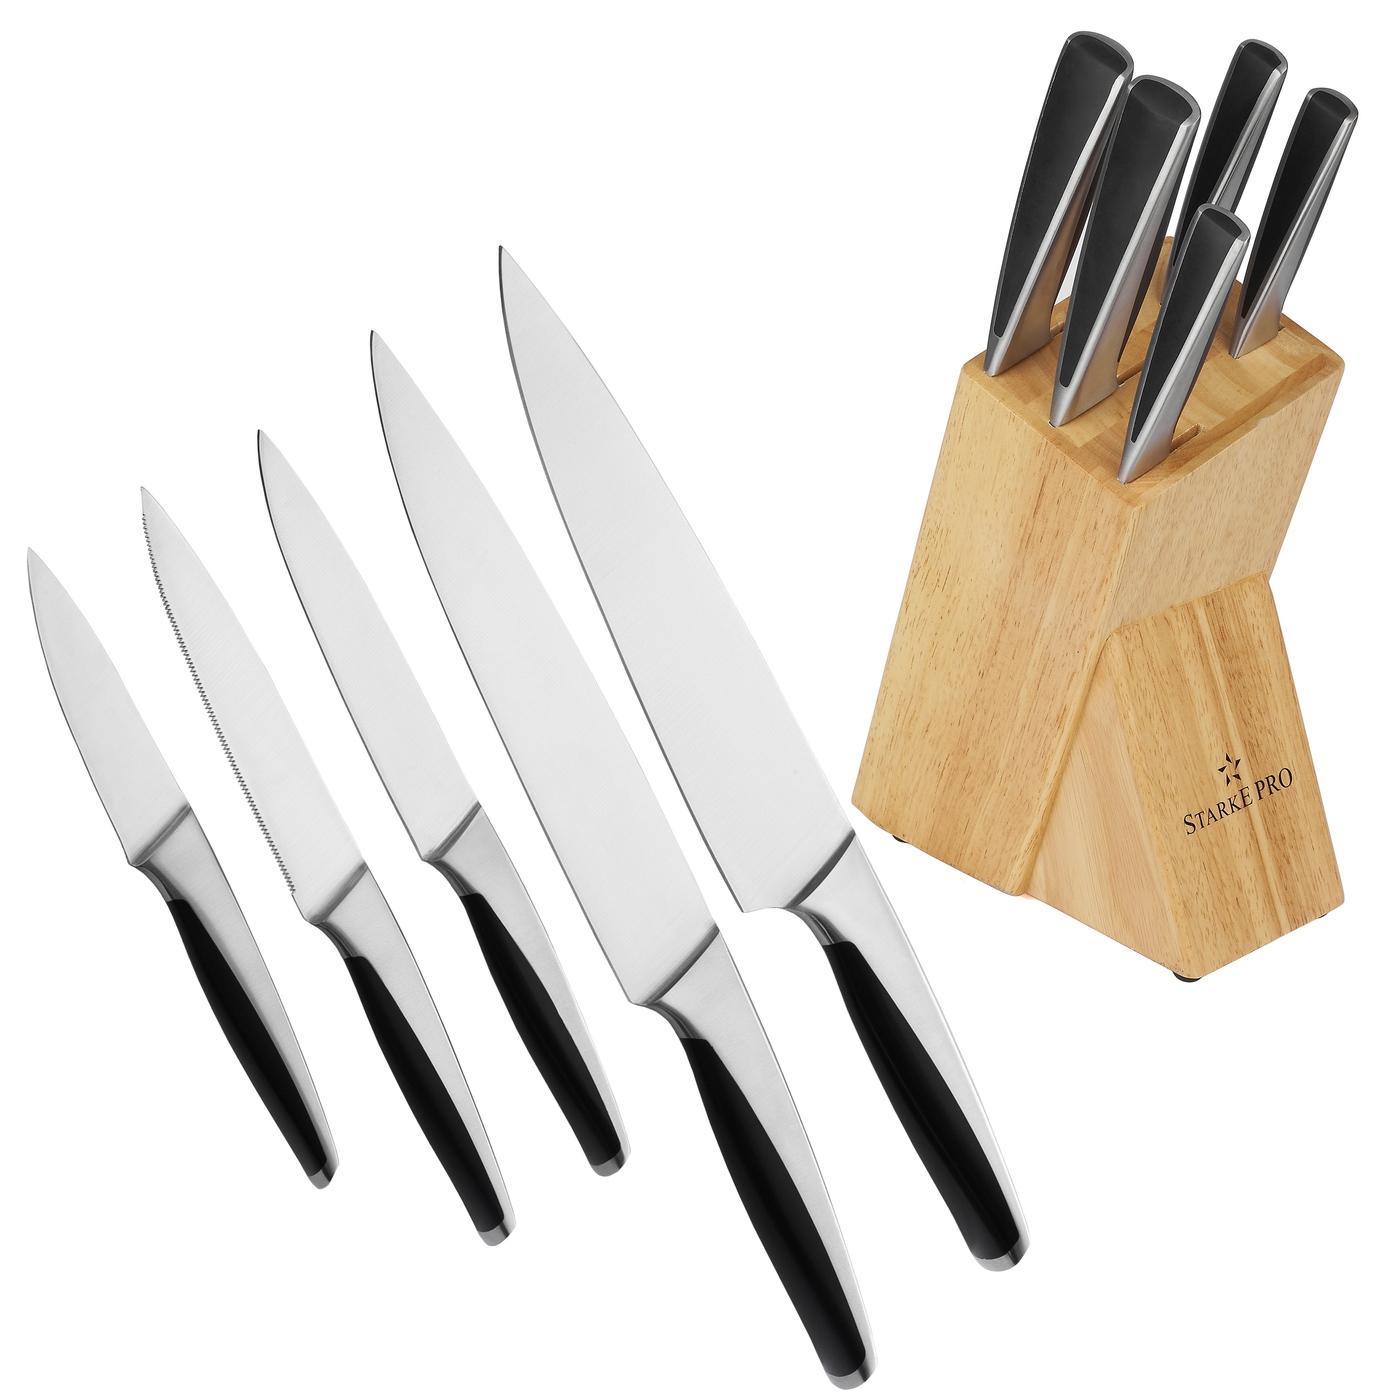 E-shop Sada nožov v stojane Starke Pro Haruna 1303, 6 kusov